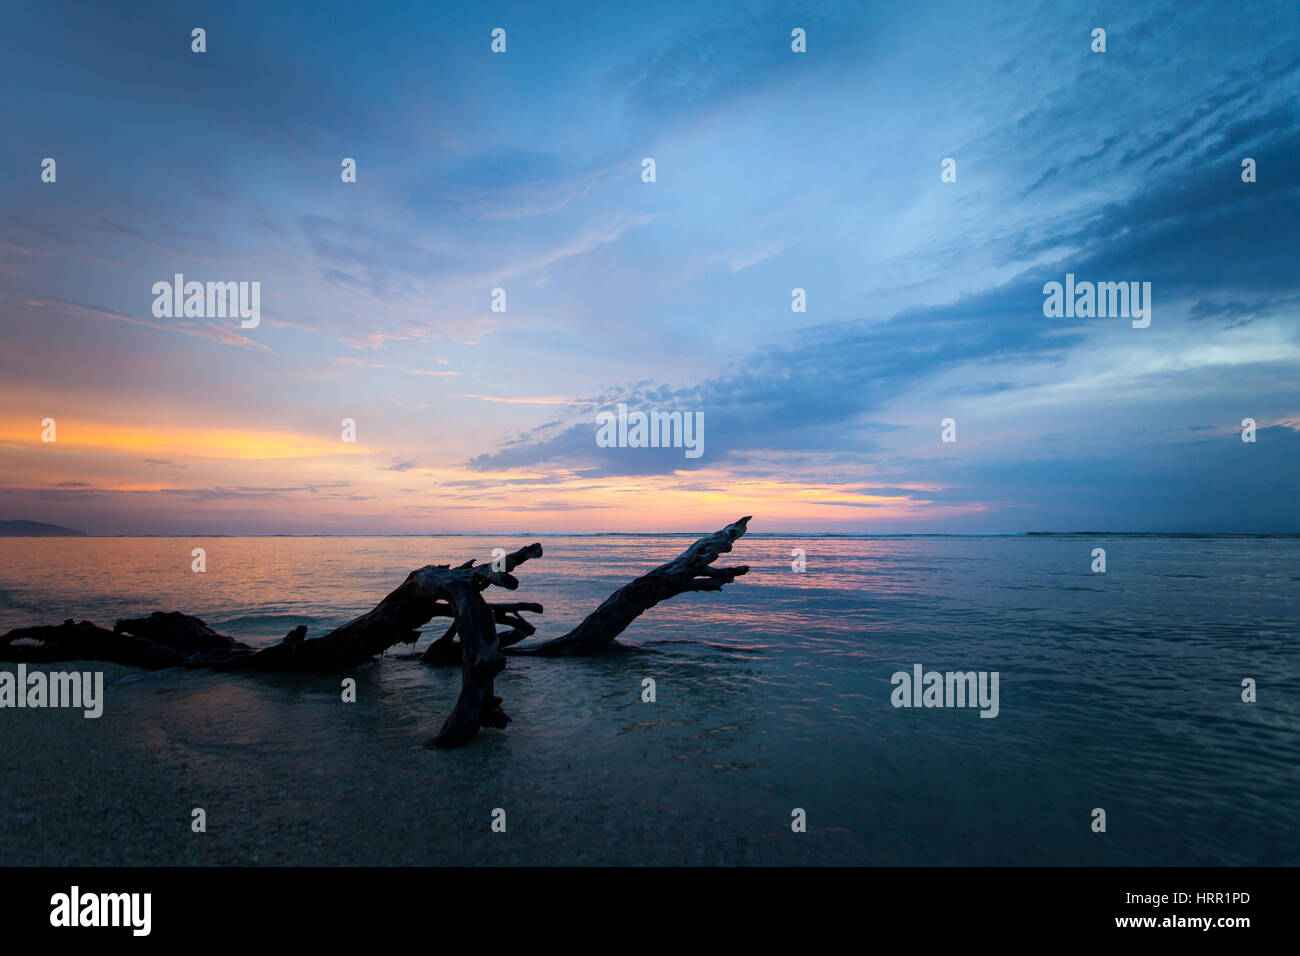 Beau lever de soleil avec les souches et les racines des palétuviers morts sur la plage. Banque D'Images